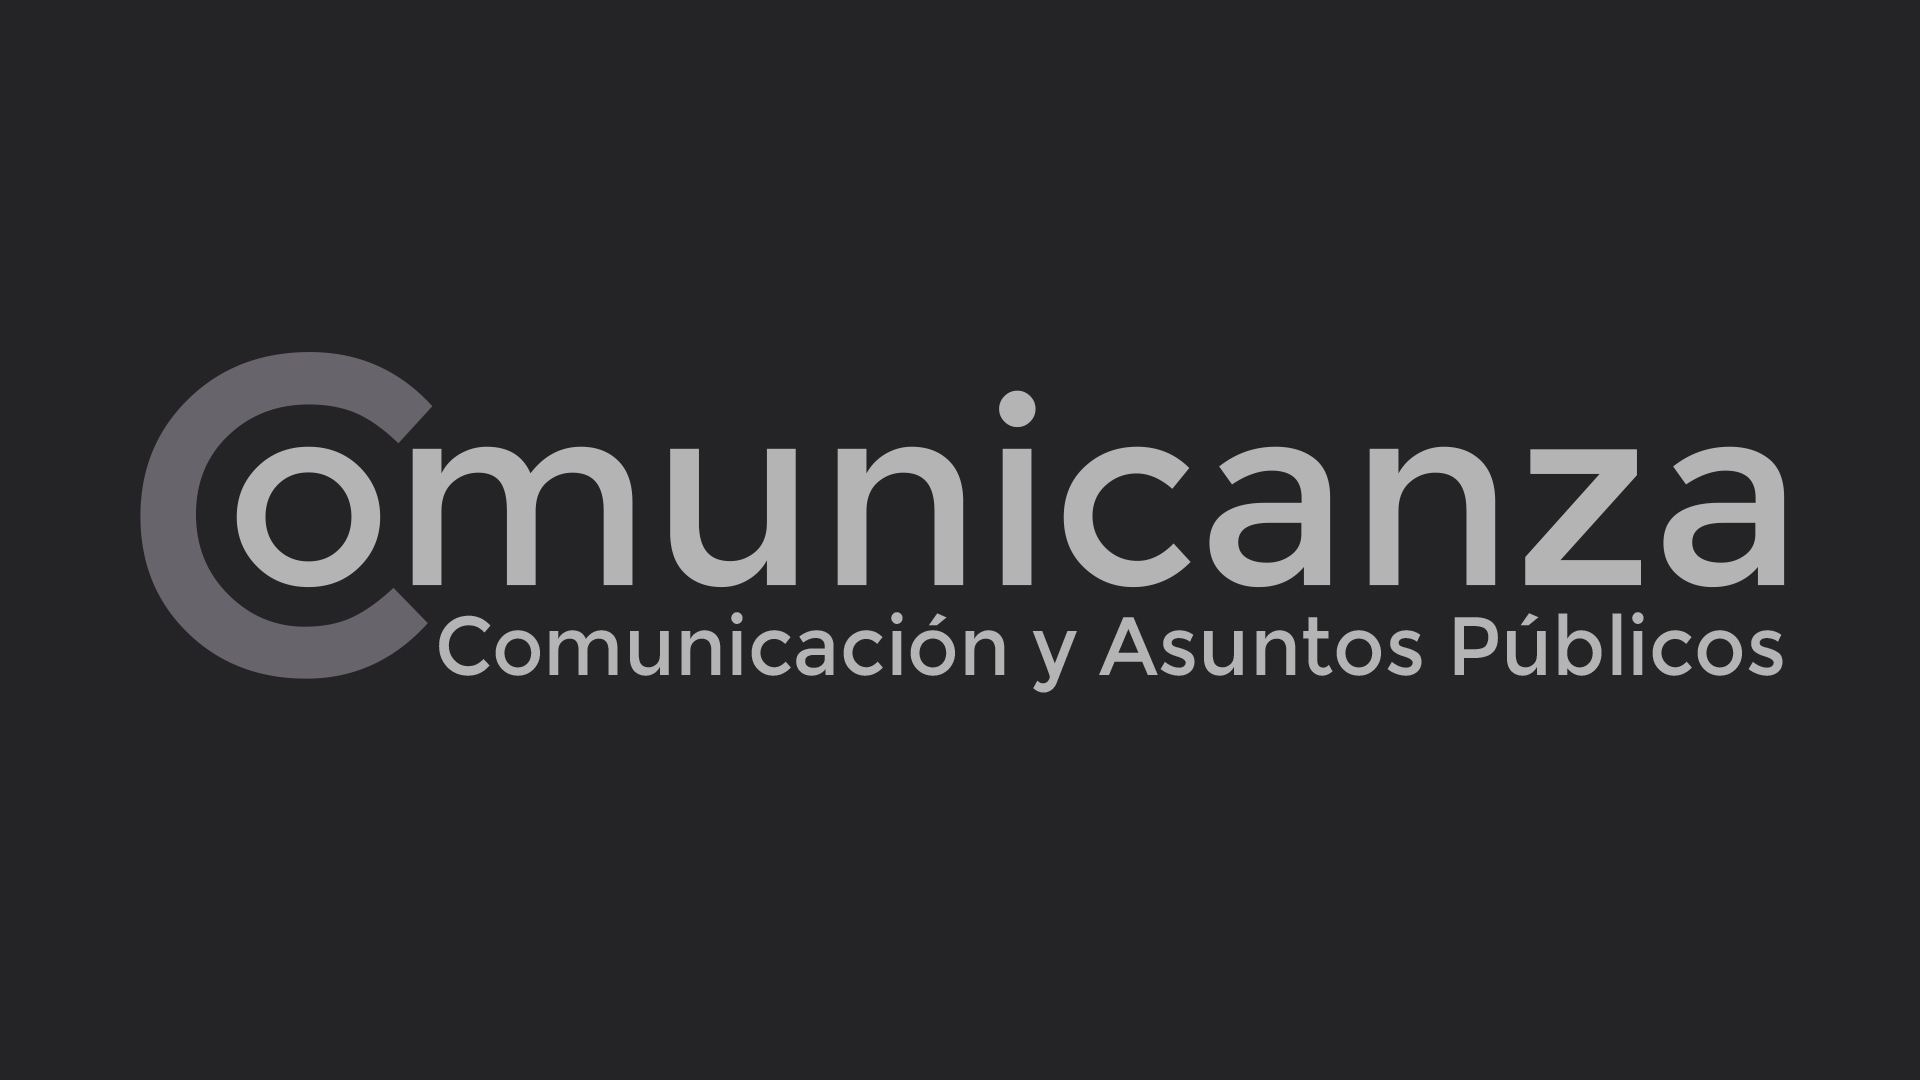 (c) Comunicanza.es